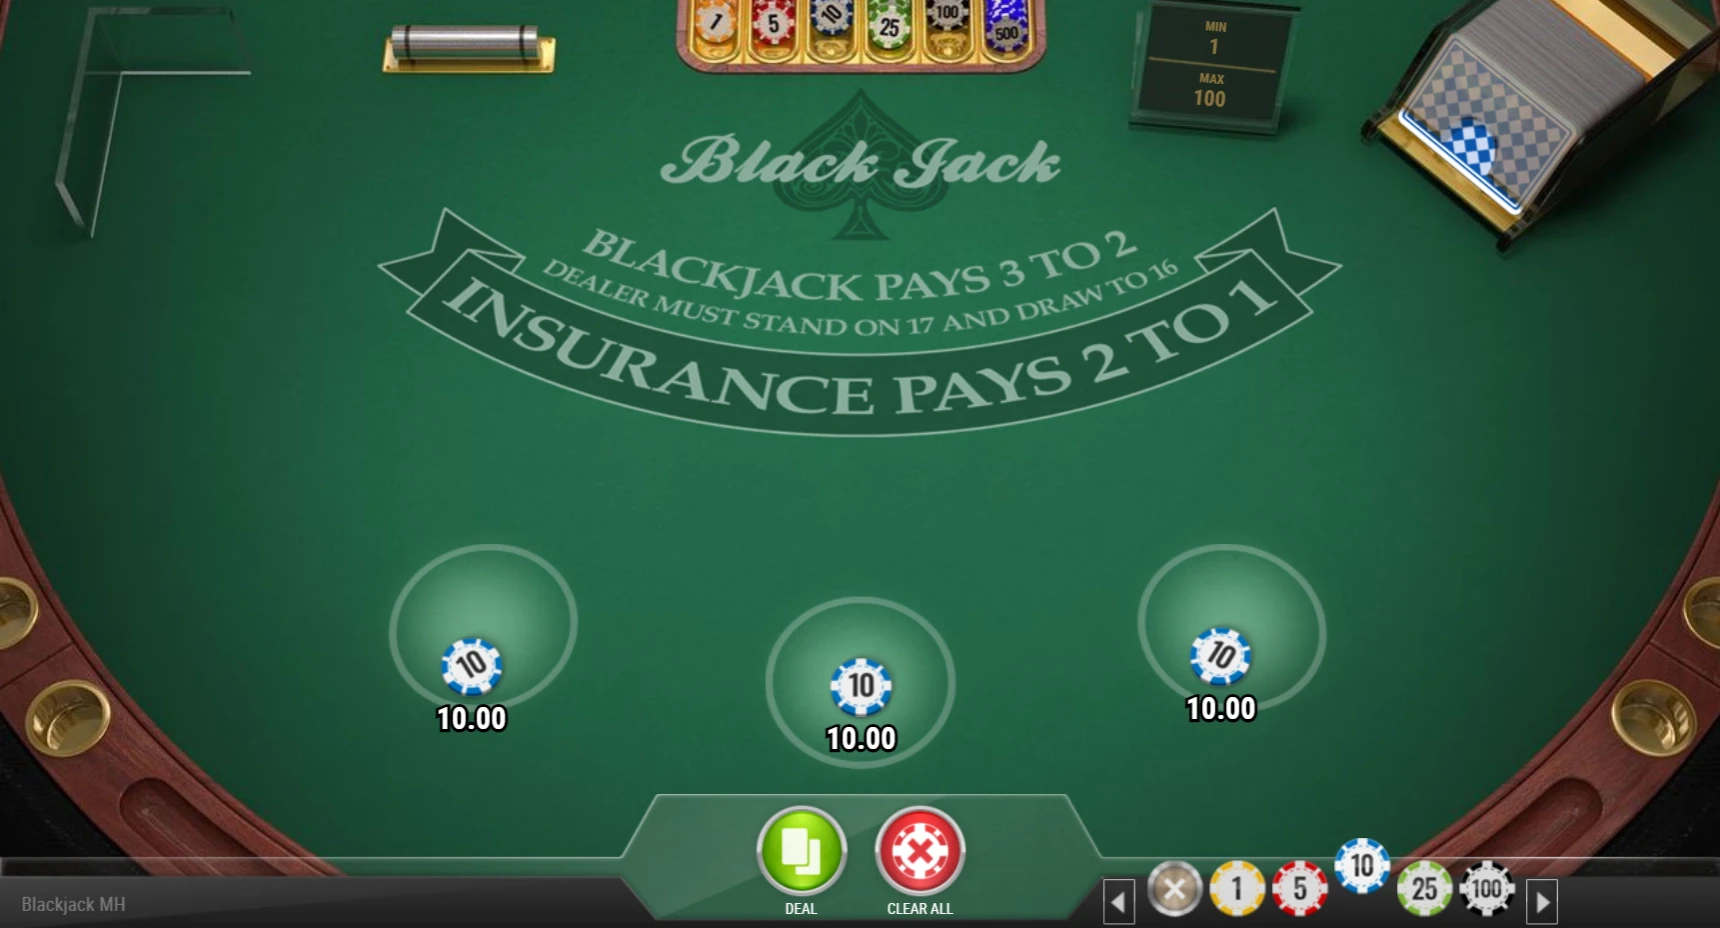 Jouer trois mains au blackjack réduit encore plus vos chances de perdre de l’argent au BJ